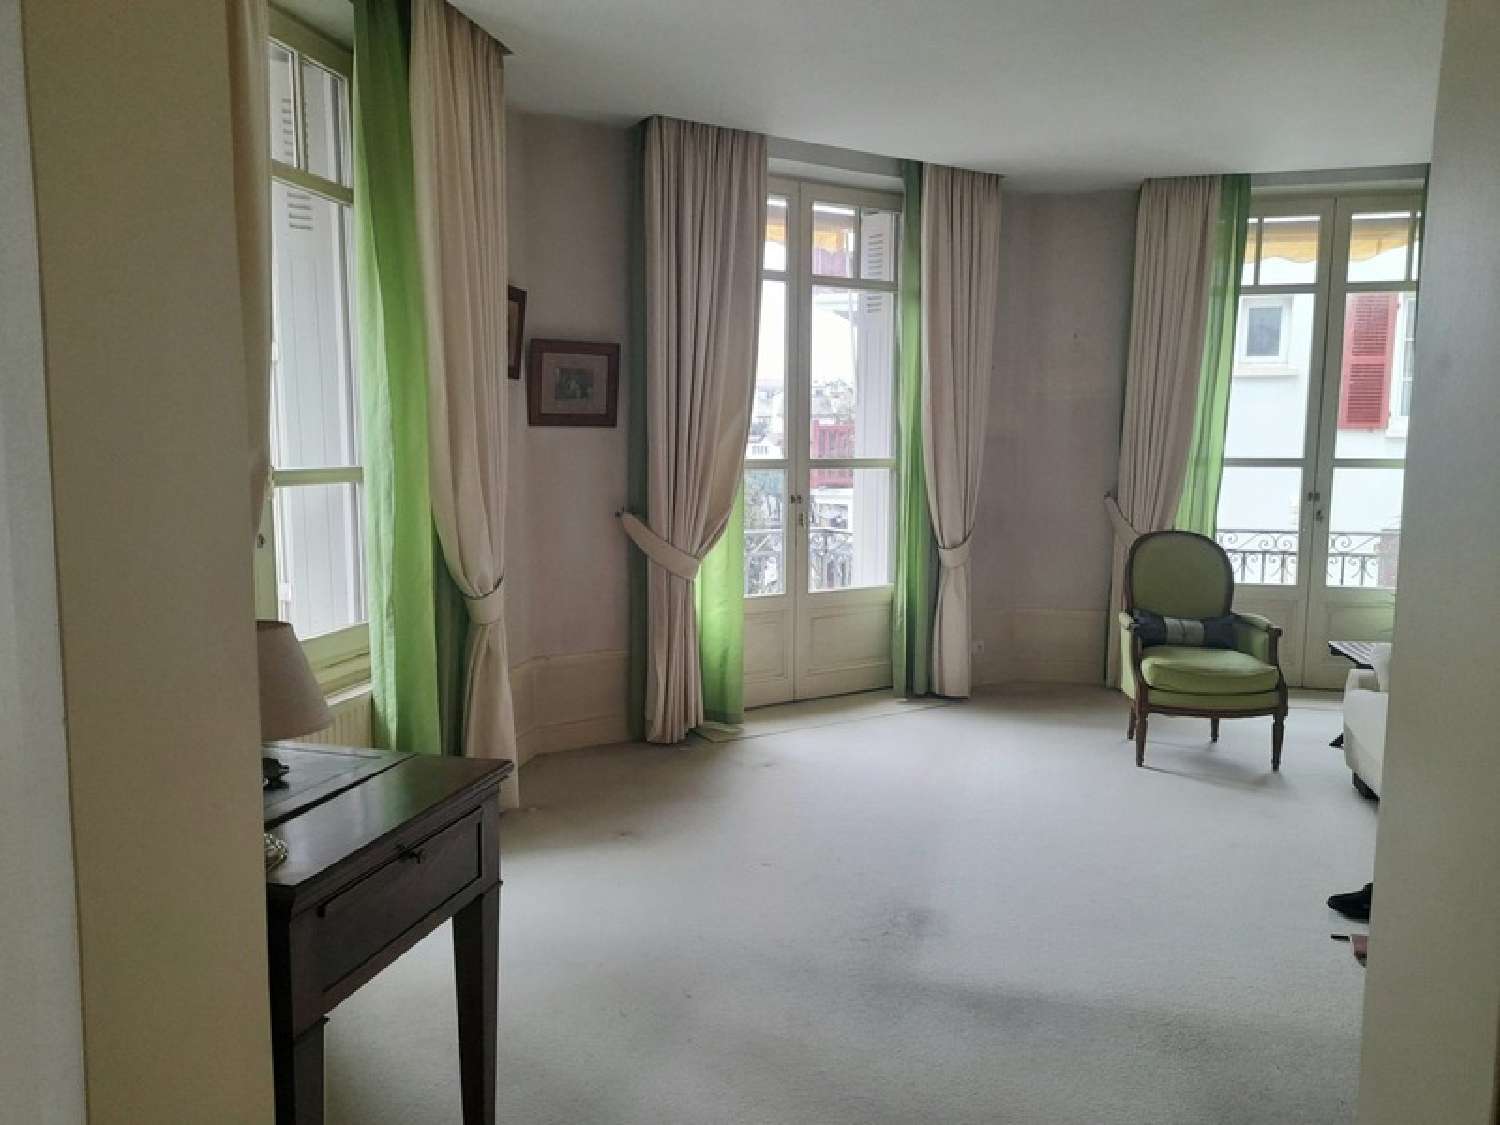  à vendre appartement Saint-Jean-de-Luz Pyrénées-Atlantiques 3